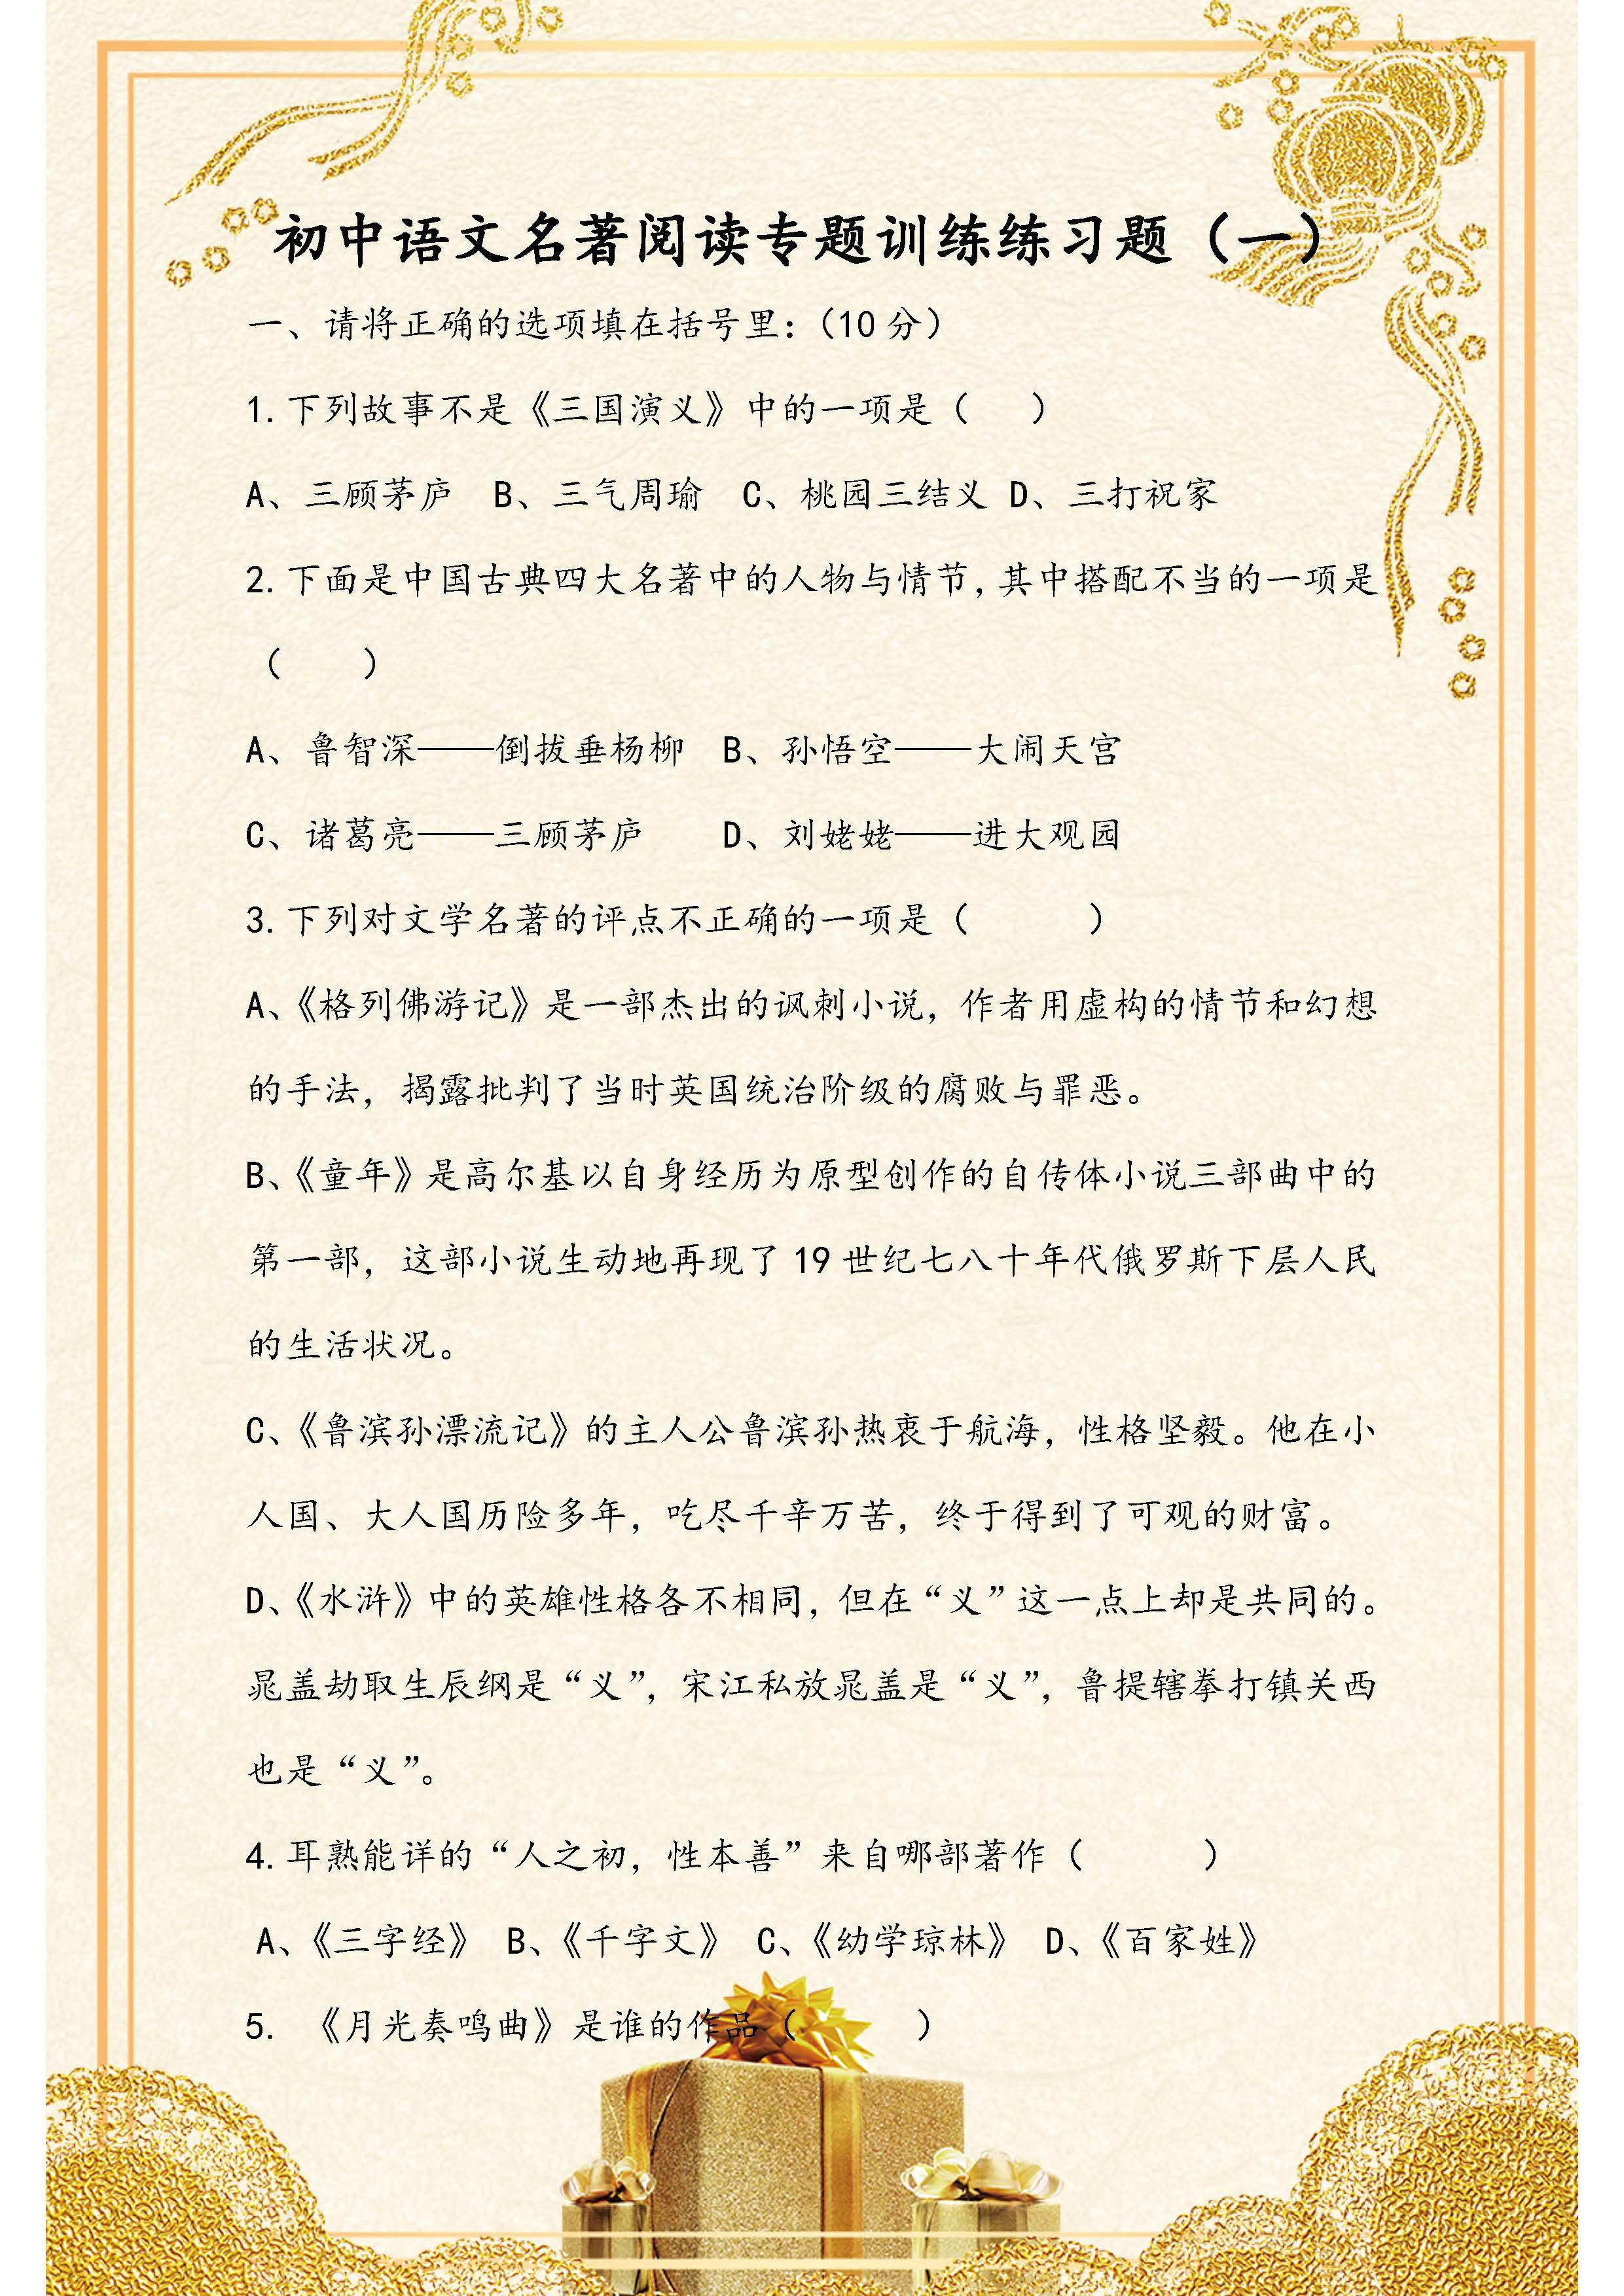 初中语文：名著阅读专题训练练习题！一共有两套题，请替孩子收藏